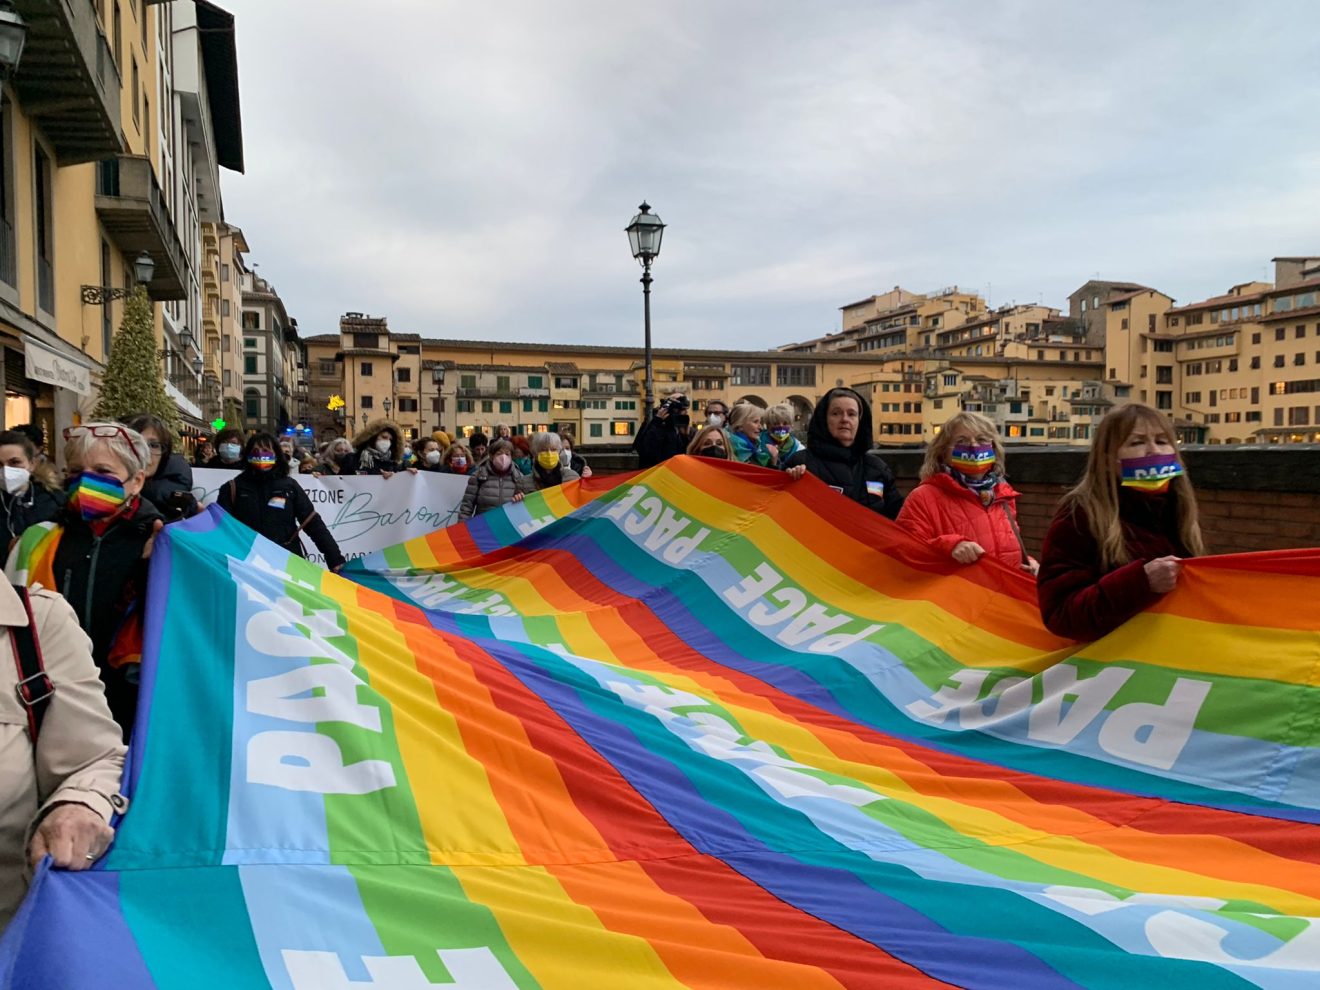 Donne in cammino per la pace, l’iniziativa con le donne Cgil a Firenze (foto)